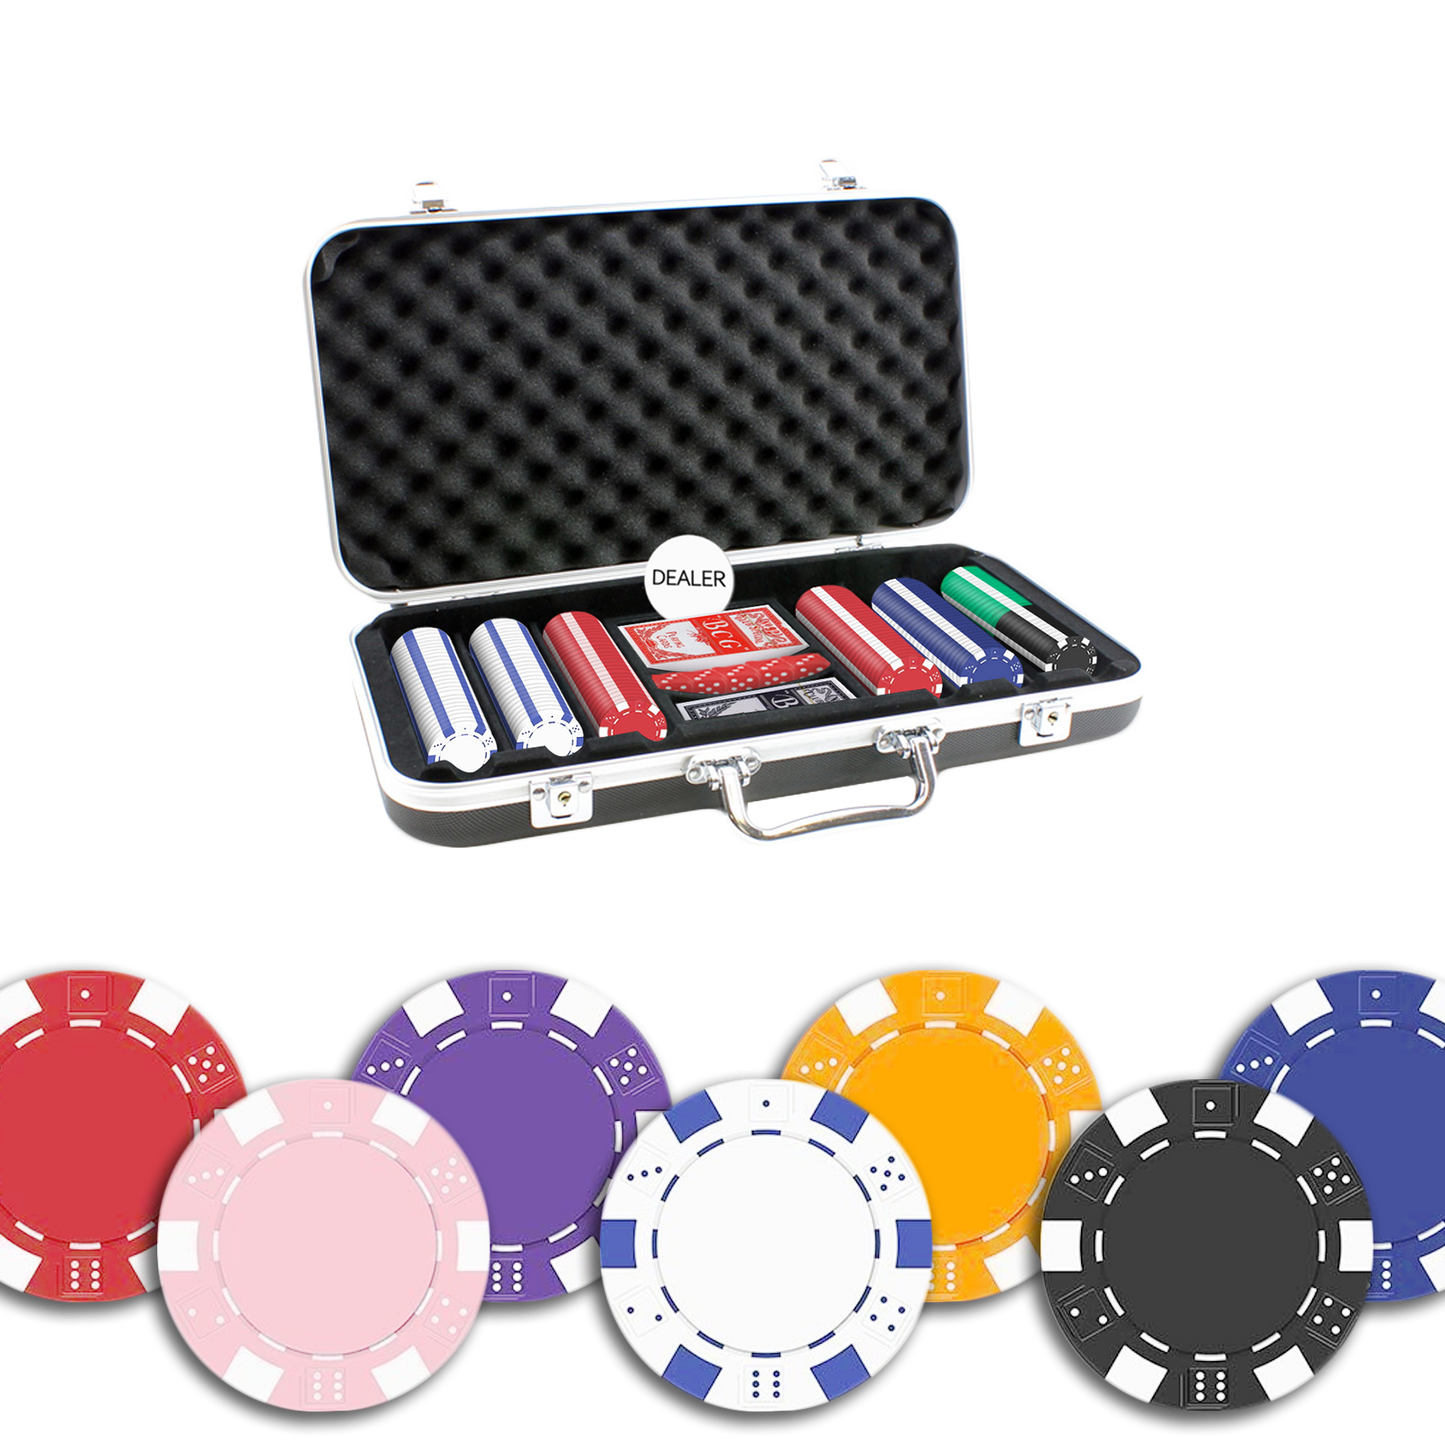 Der Dice Pokerkoffer mit 300 Chips